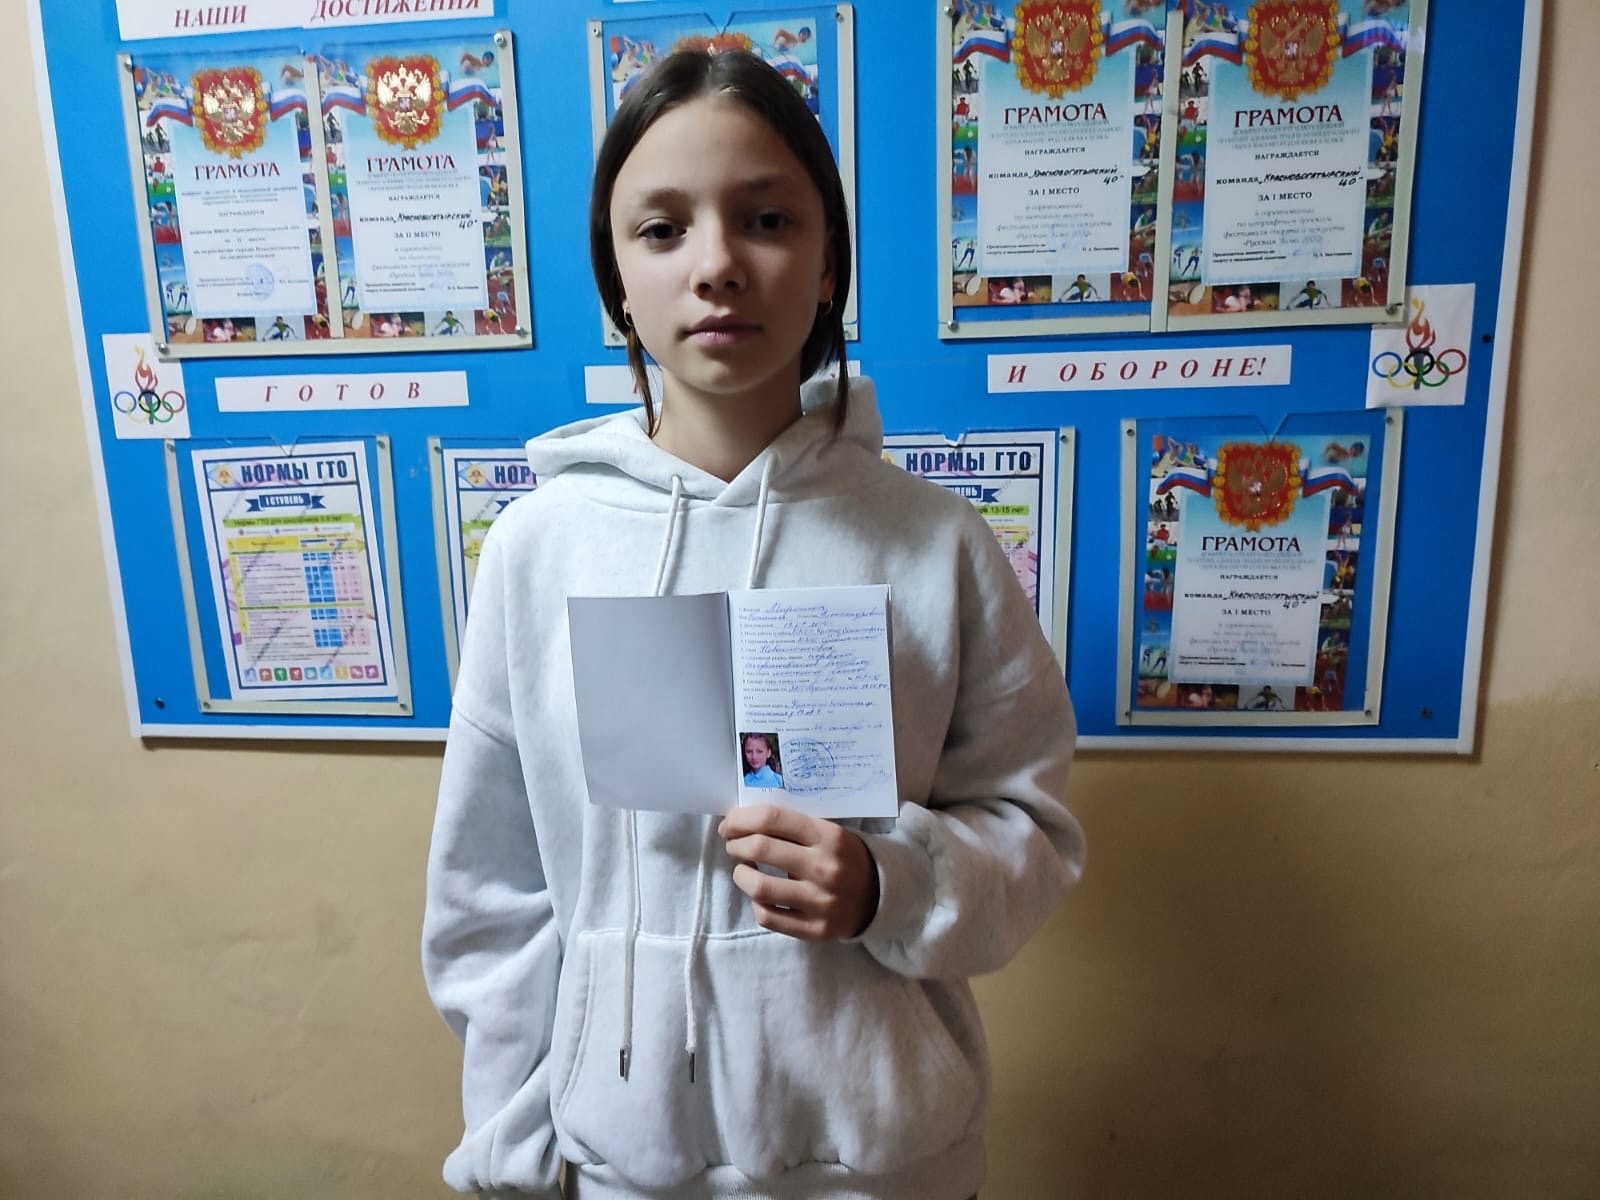 Поздравляем ученицу 7 класса Миронюк Полину, которая получила Квалификационную книжку, подтверждающую, что она имеет первый взрослый разряд по лыжным гонкам!.